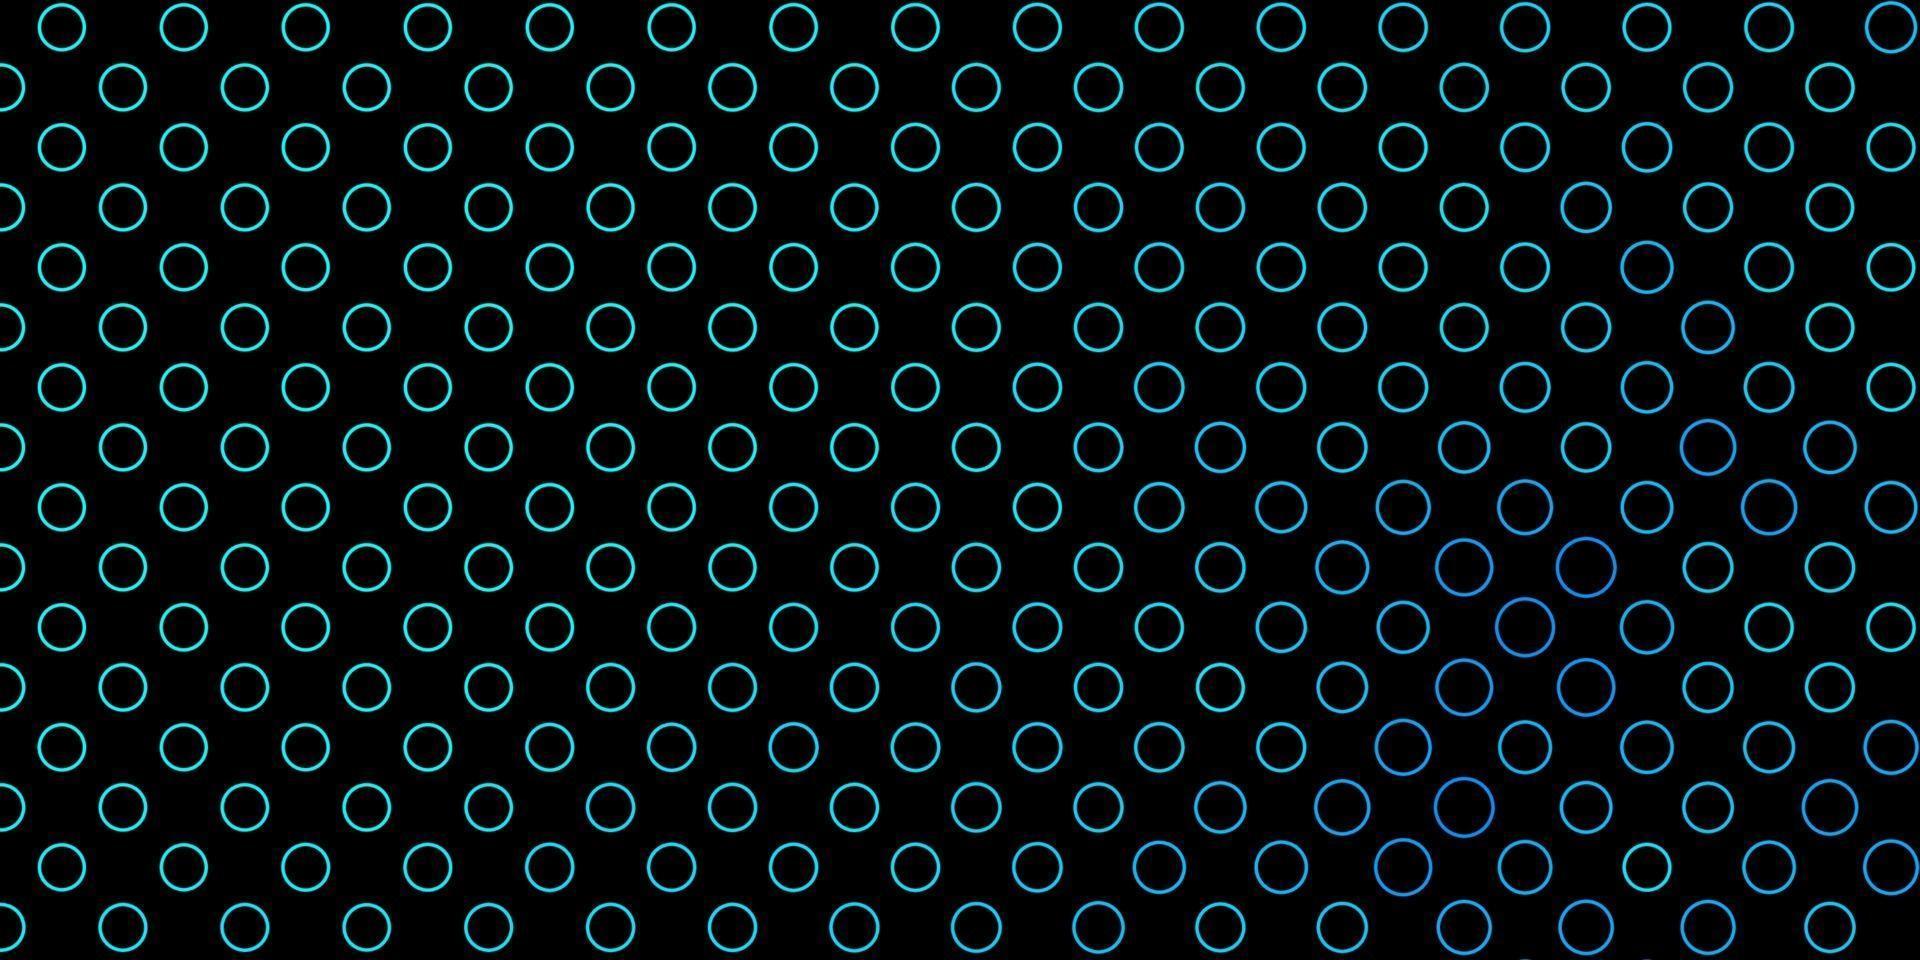 plantilla de vector azul oscuro con círculos.